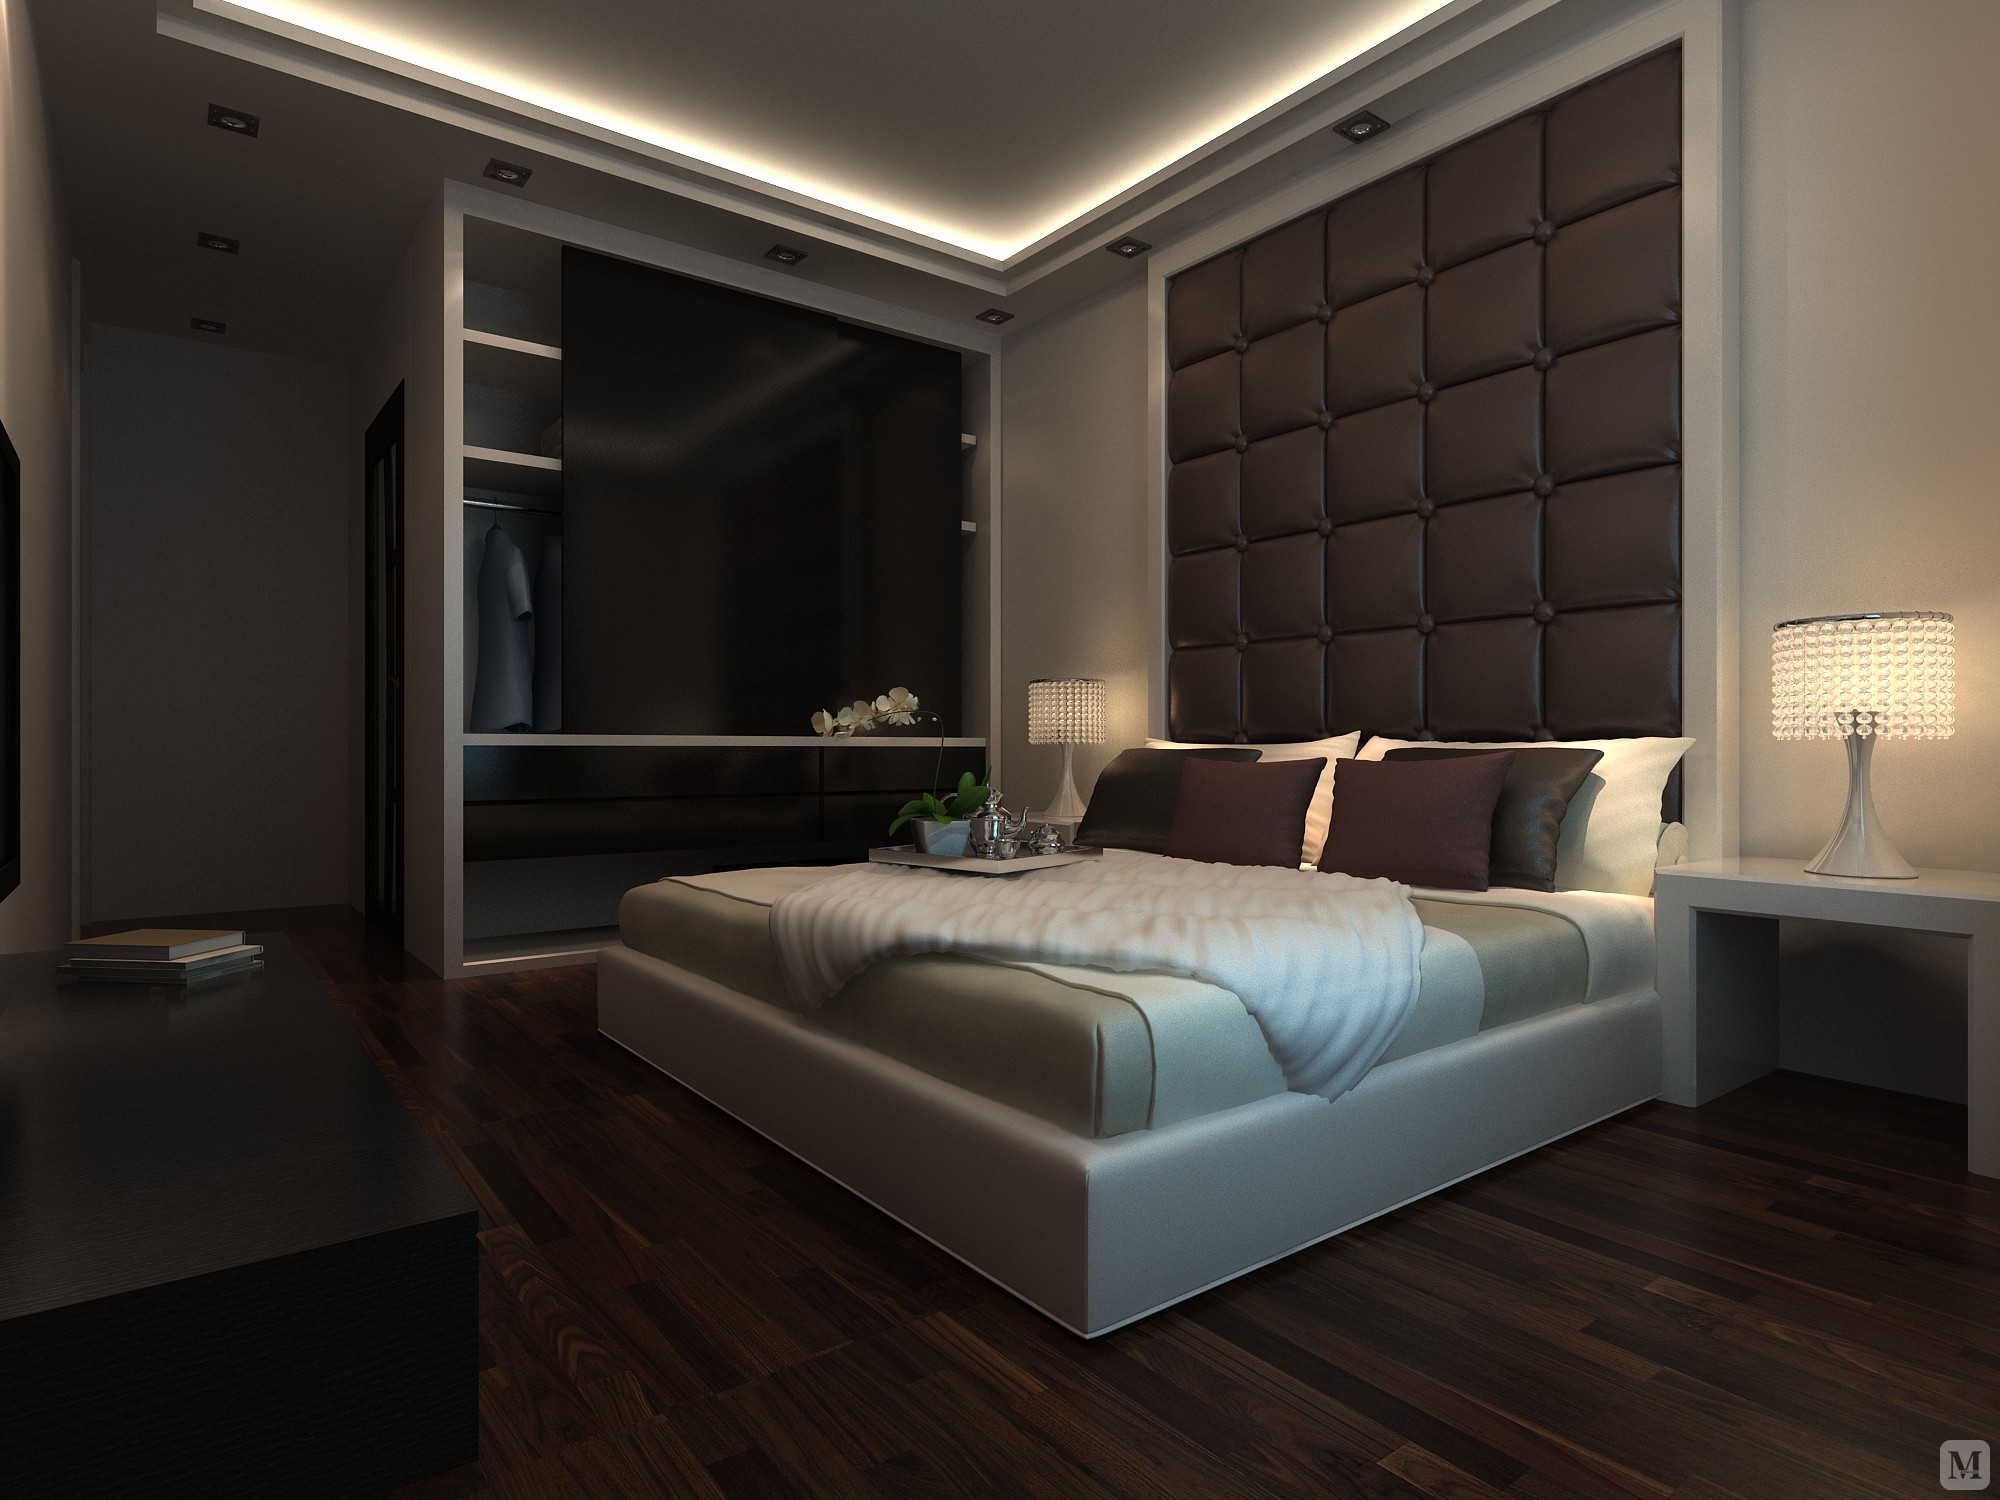 白色的天花板到白色的墙面，再到白色的家具，搭配上烟紫色的靠包和带有淡淡印花的床品，为洁净的纯白色空间加入一点浪漫的柔情。床边的木质楼梯完善了卧室里的收纳功能。卧室的设计充分体现出了简约而具品质的特征。简洁造型的床头搭配纯棉材质的床品，让睡眠空间温醇而舒适。紫色的地面让房间温婉优雅，整体空间与之搭配和谐，显现出完美的气质。